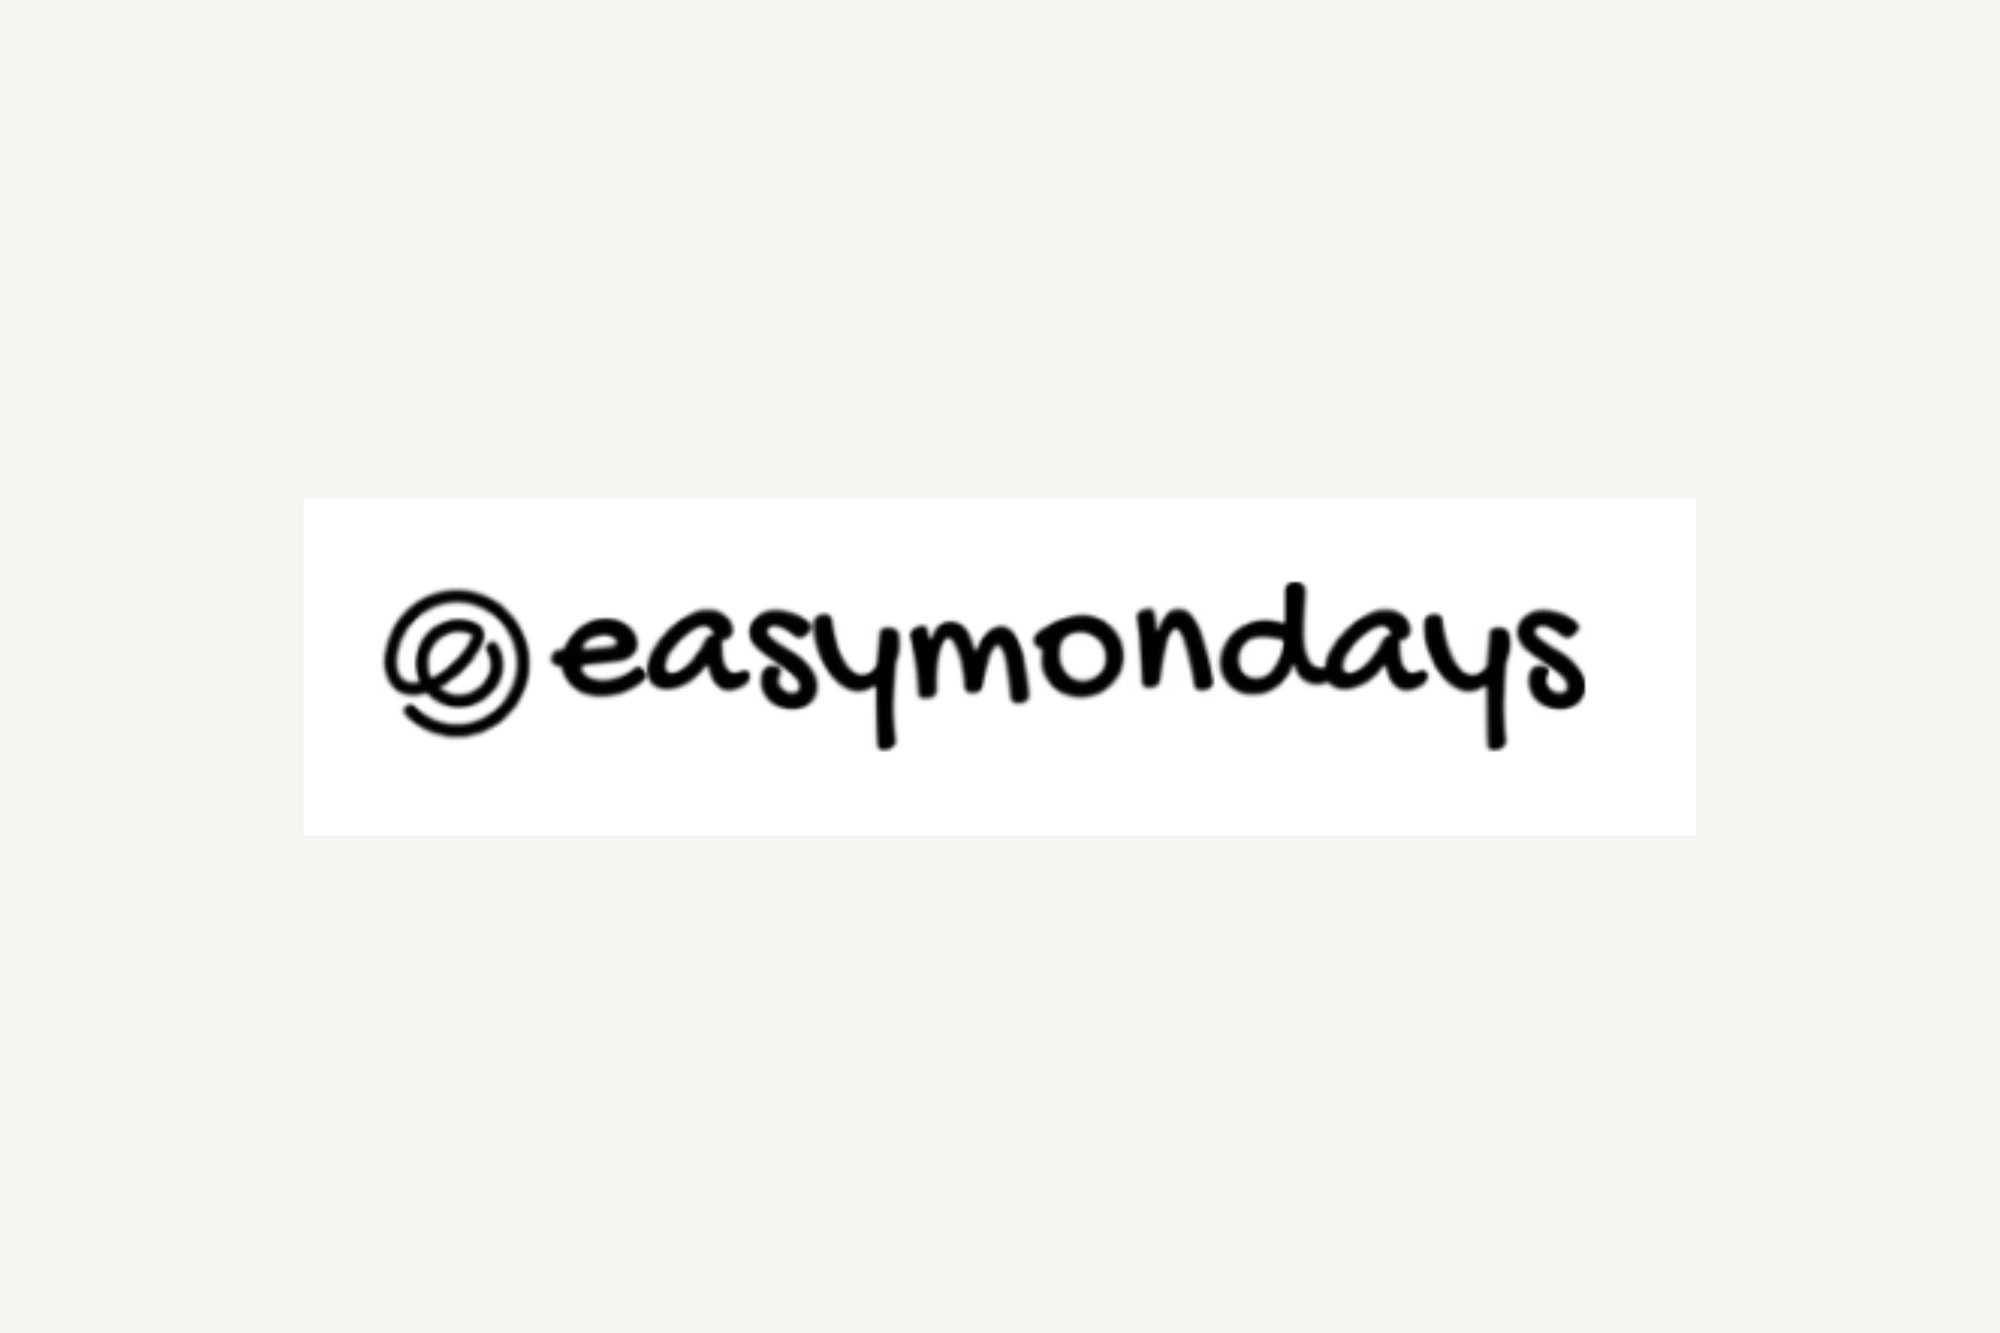 Easy Mondays